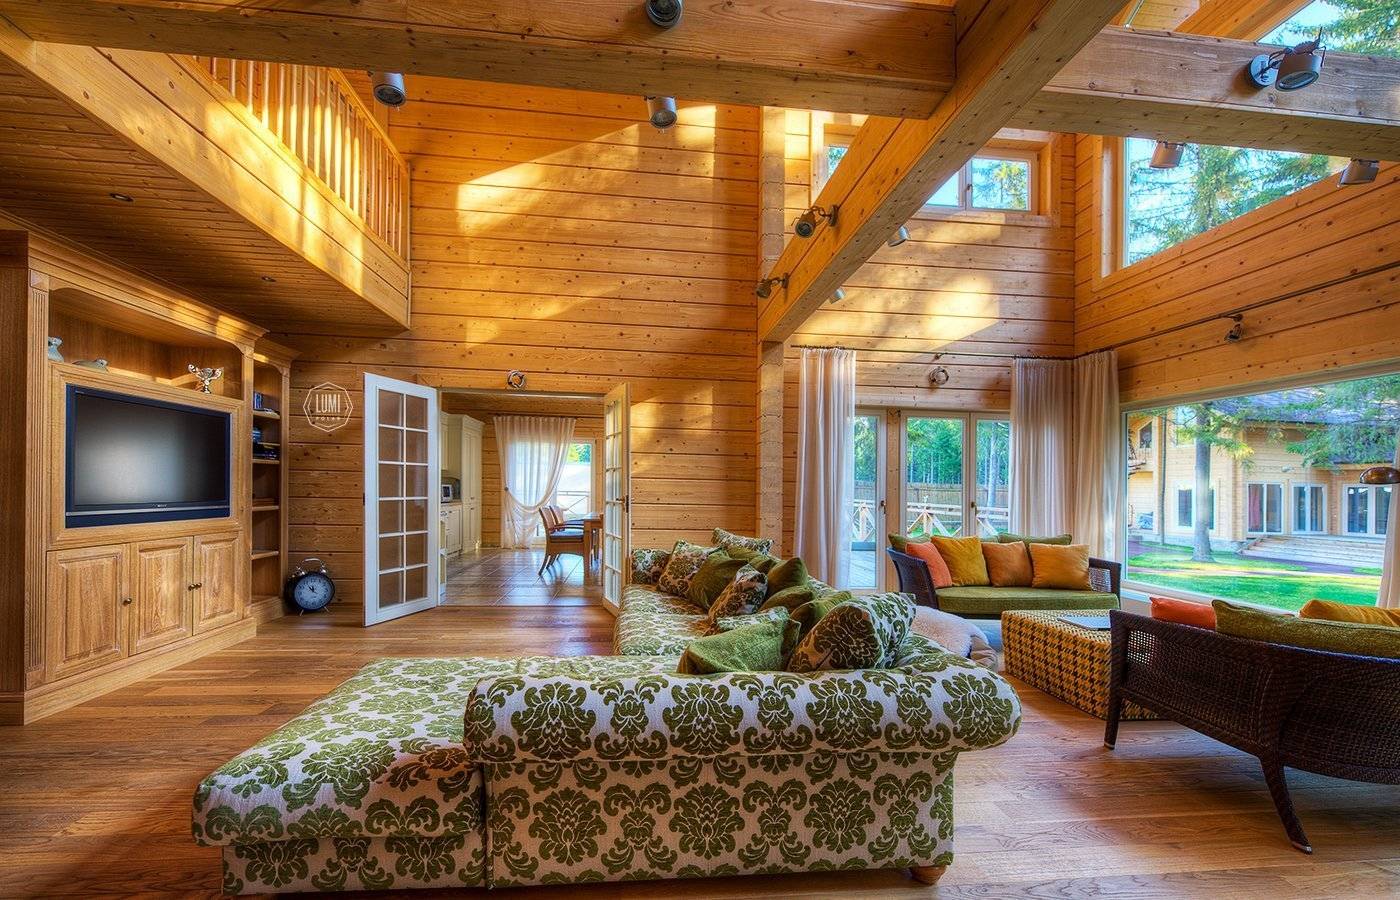 Дизайн интерьера деревянного дома из бруса внутри: оформление гостиной своими руками (фото и видео)